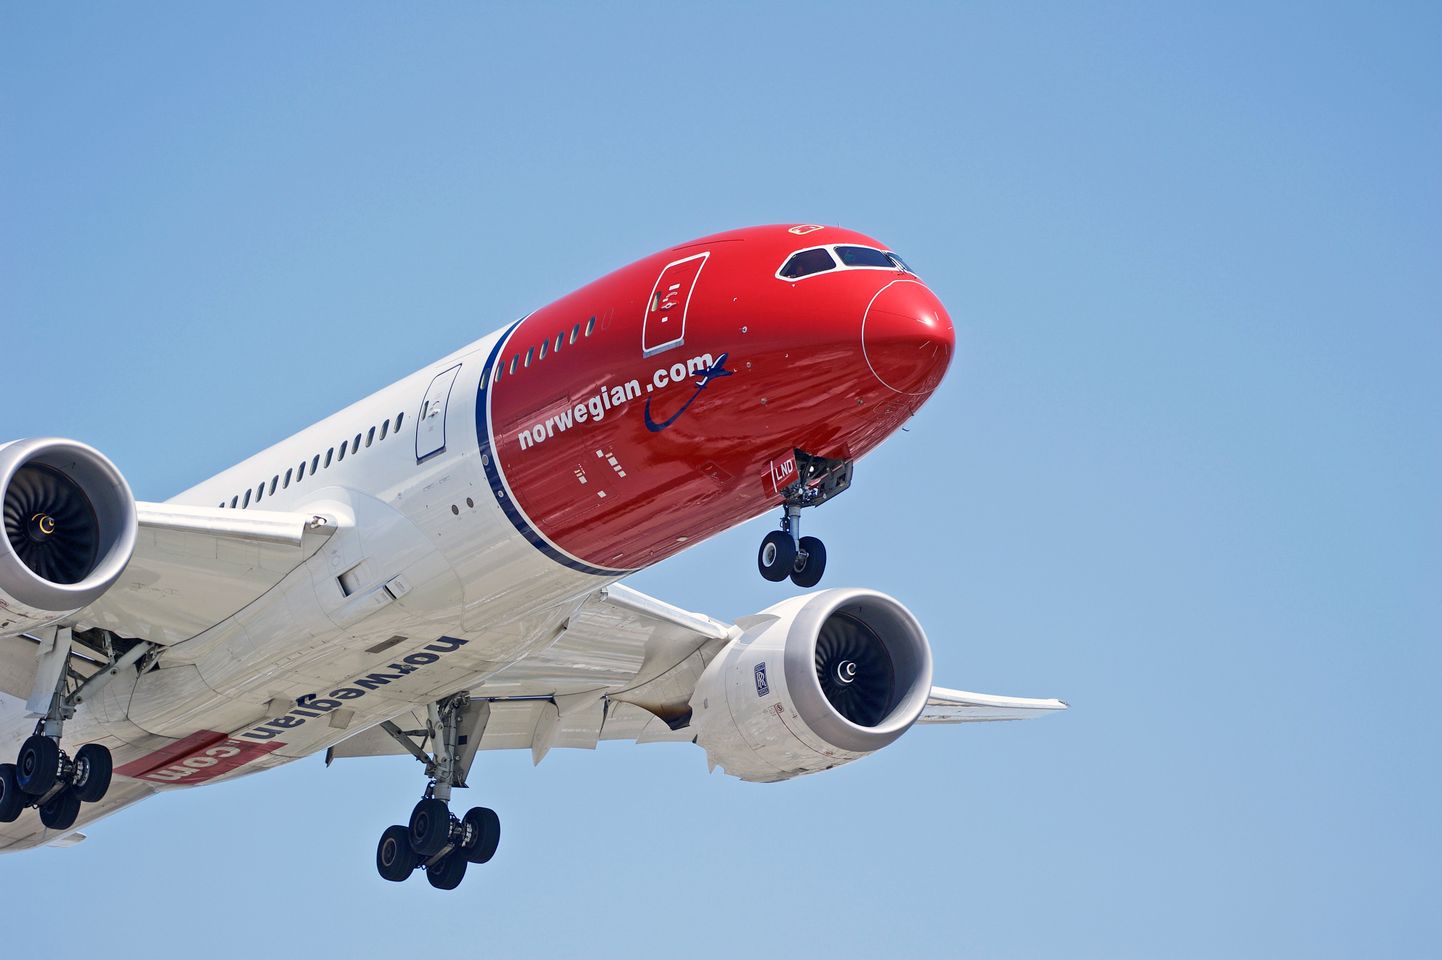 Самолет Norwegian Air. Иллюстративное фото